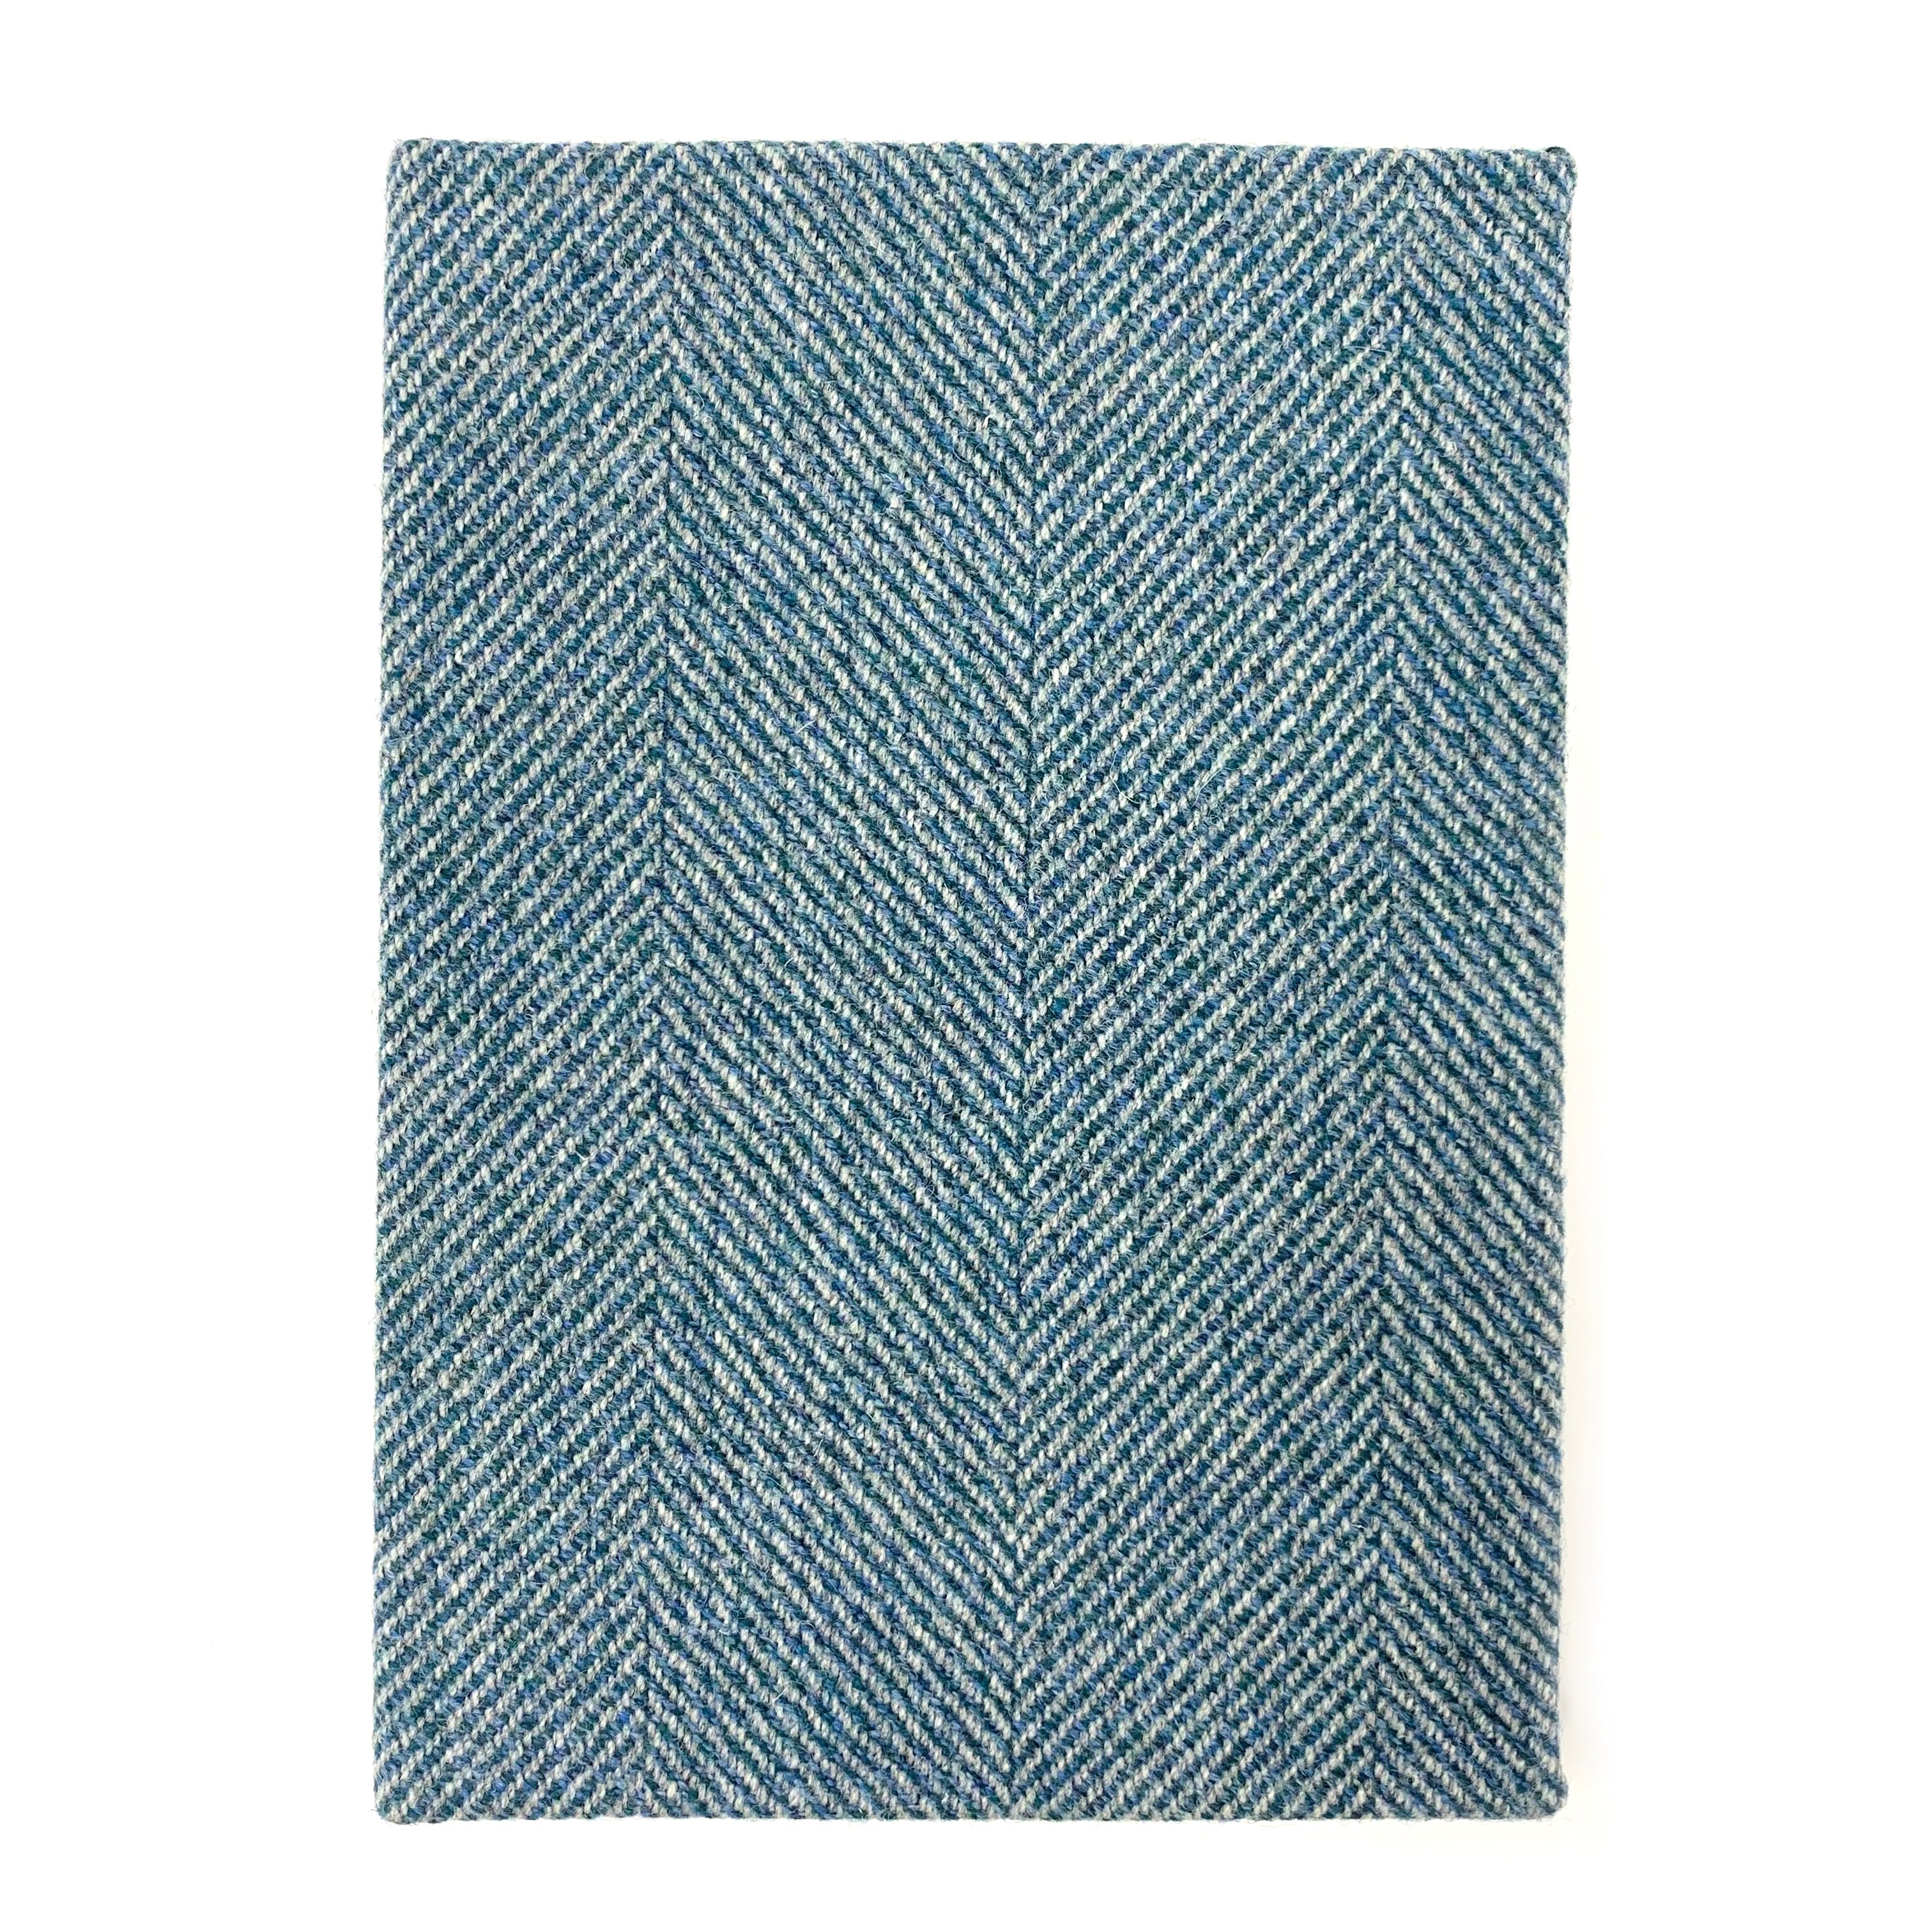 Blue Herringbone A5 Notebook